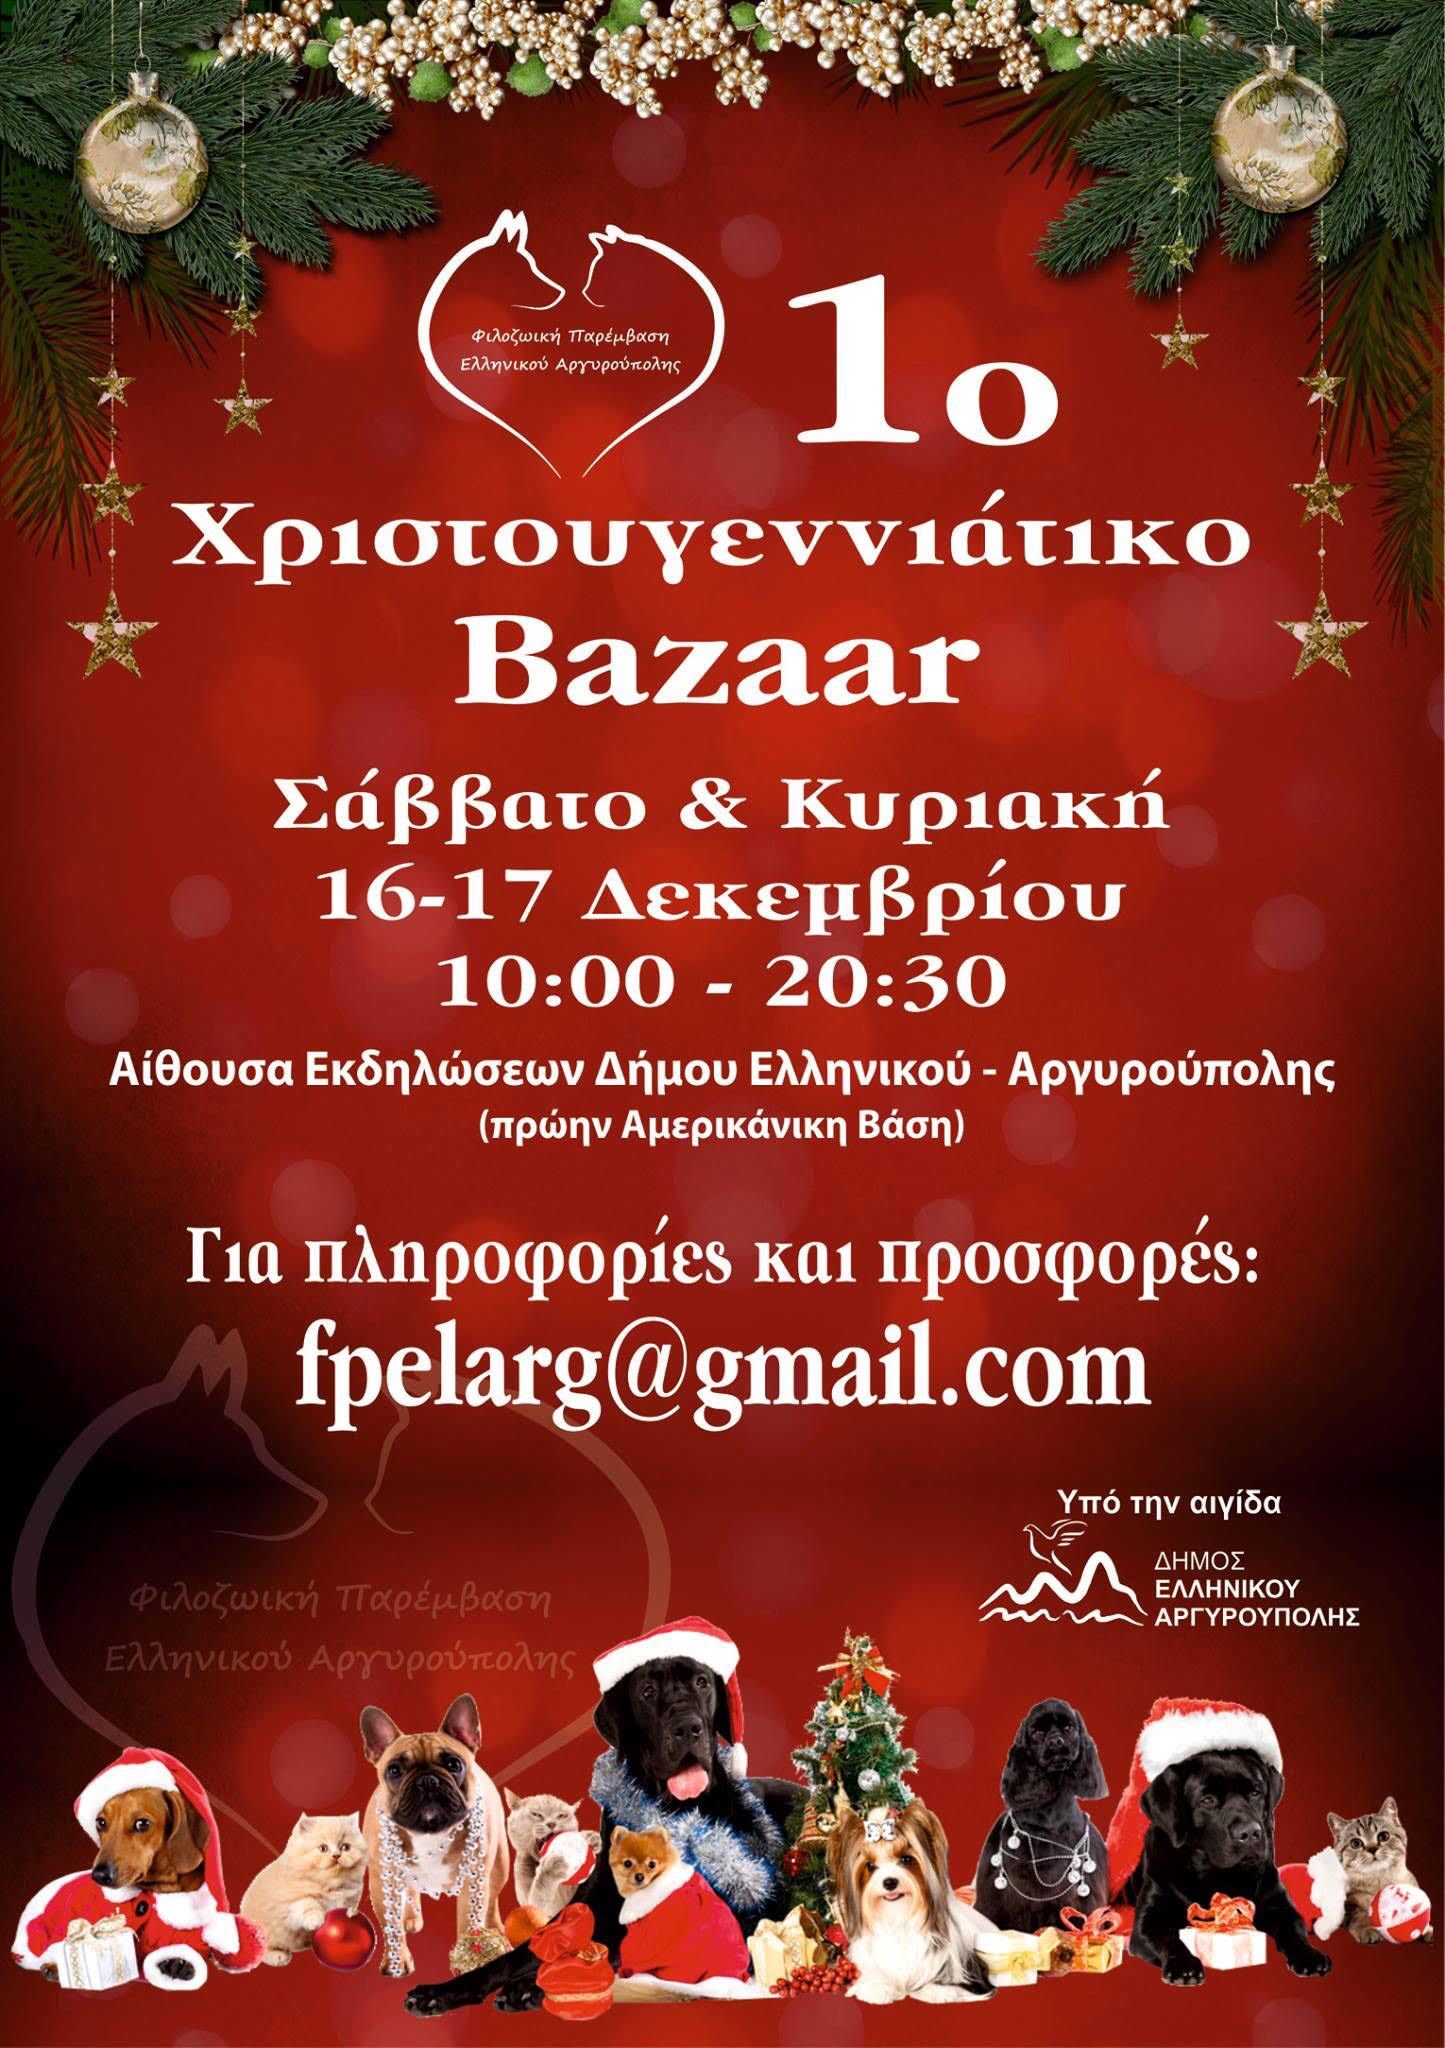 Το Σαββατοκύριακο θα διεξαχθεί το 1ο bazaar της Φιλοζωικής Παρέμβασης Ελληνικού - Αργυρούπολης